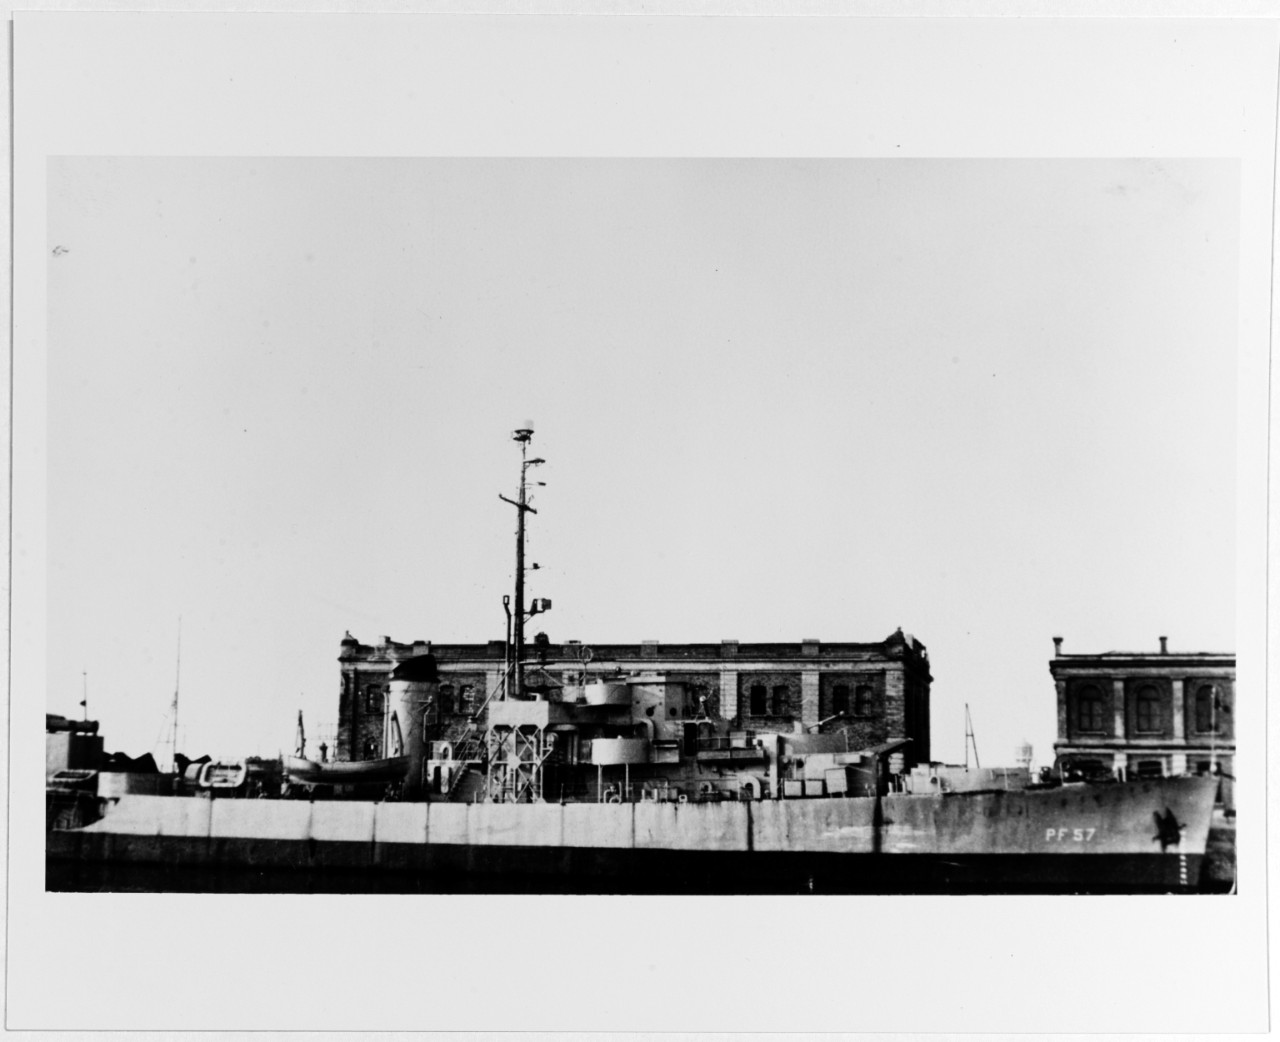 USS SHEBOYGAN (PF-57)